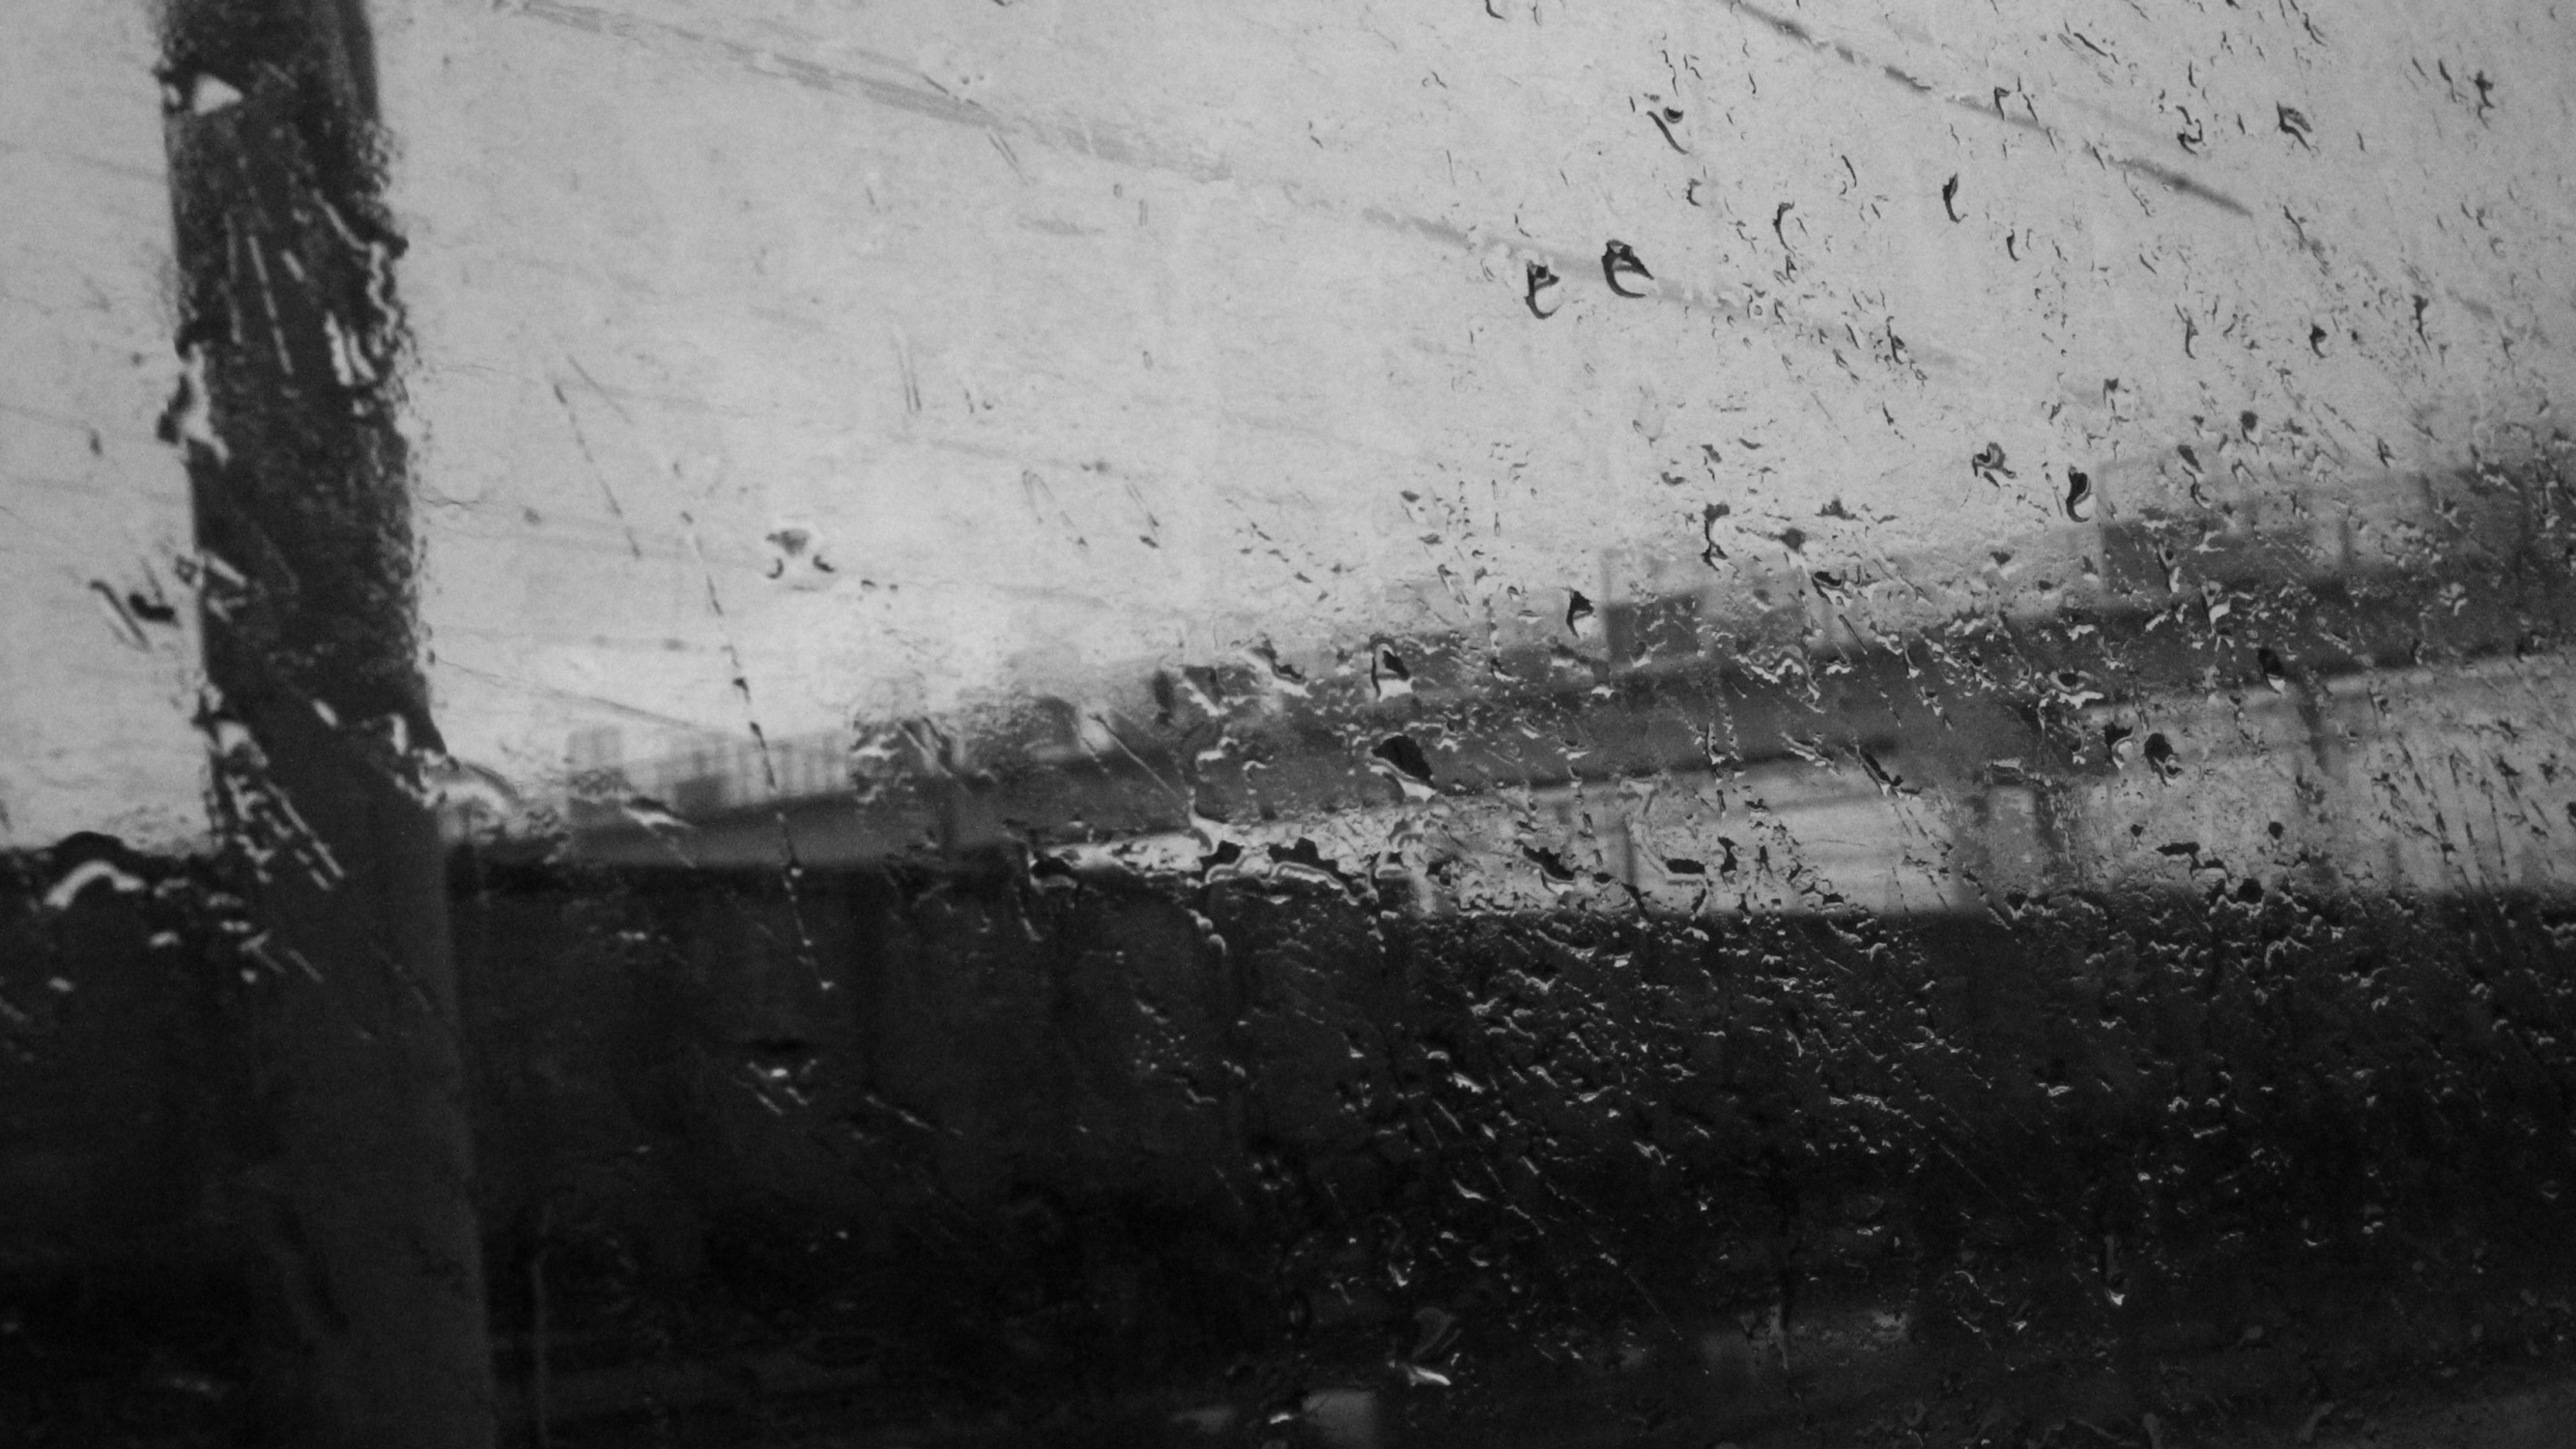 General 2666x1500 rain window monochrome water drops